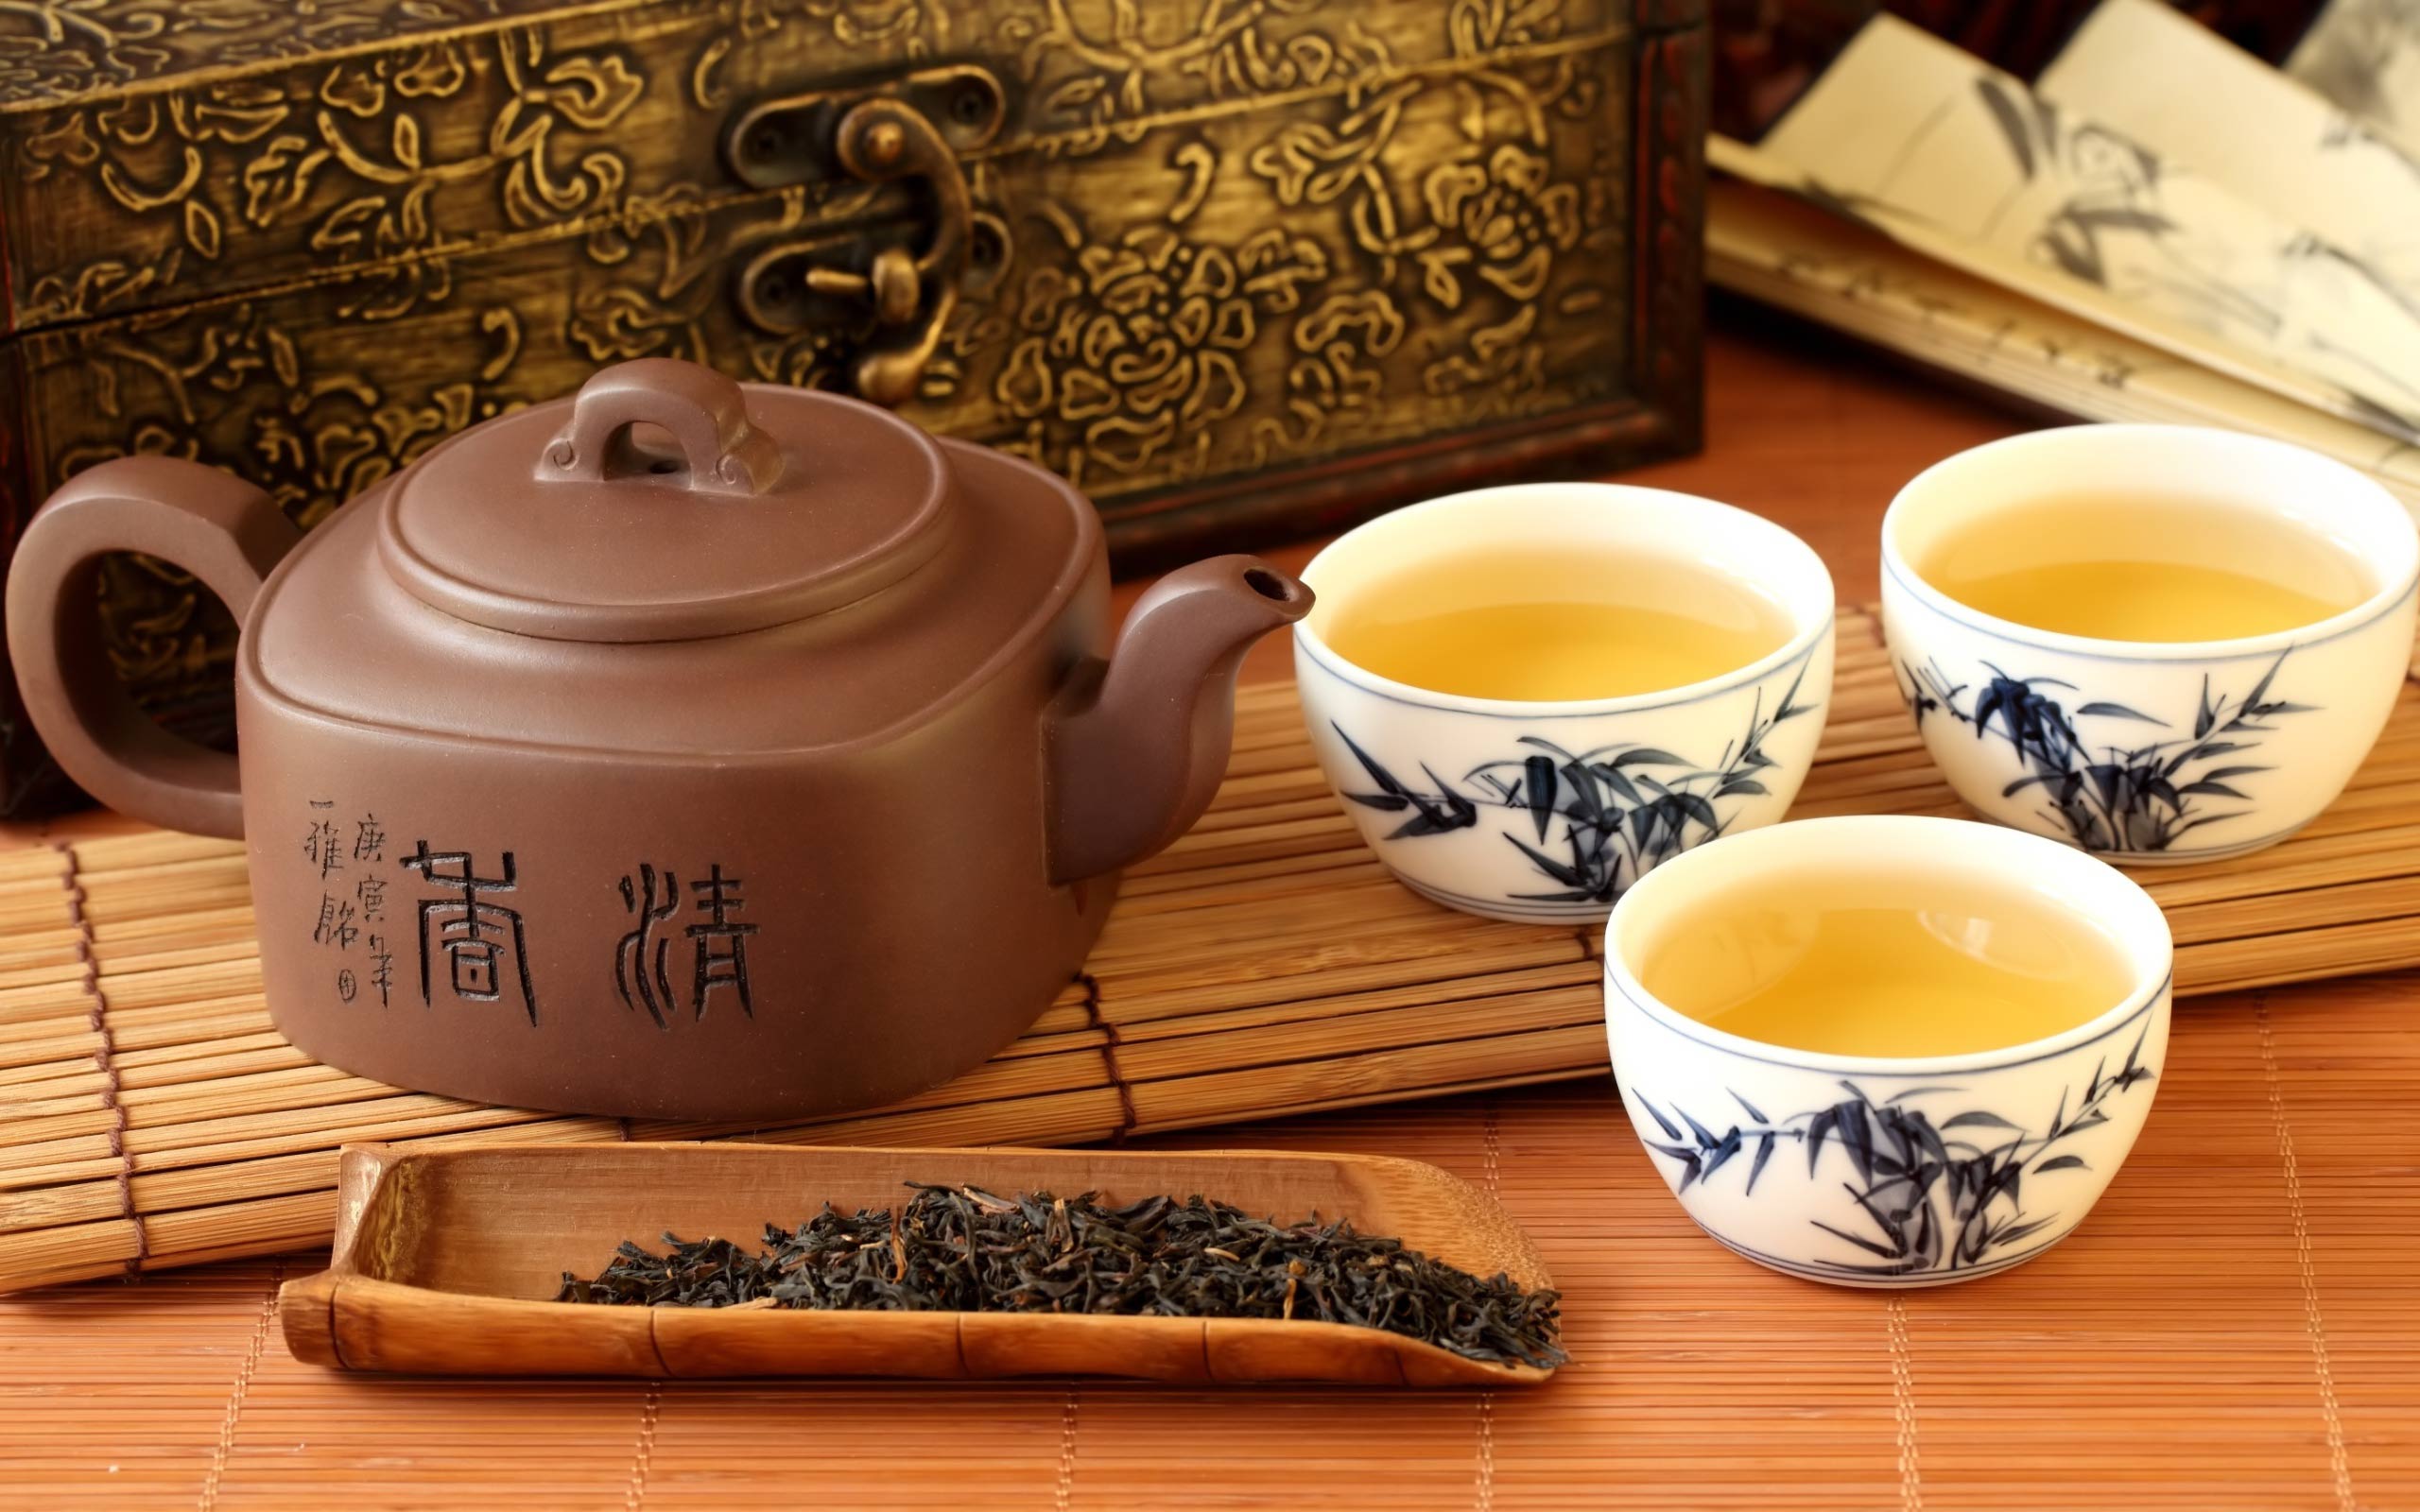 آداب نوشیدن چای و انواع چای ها در کشورهای مختلف